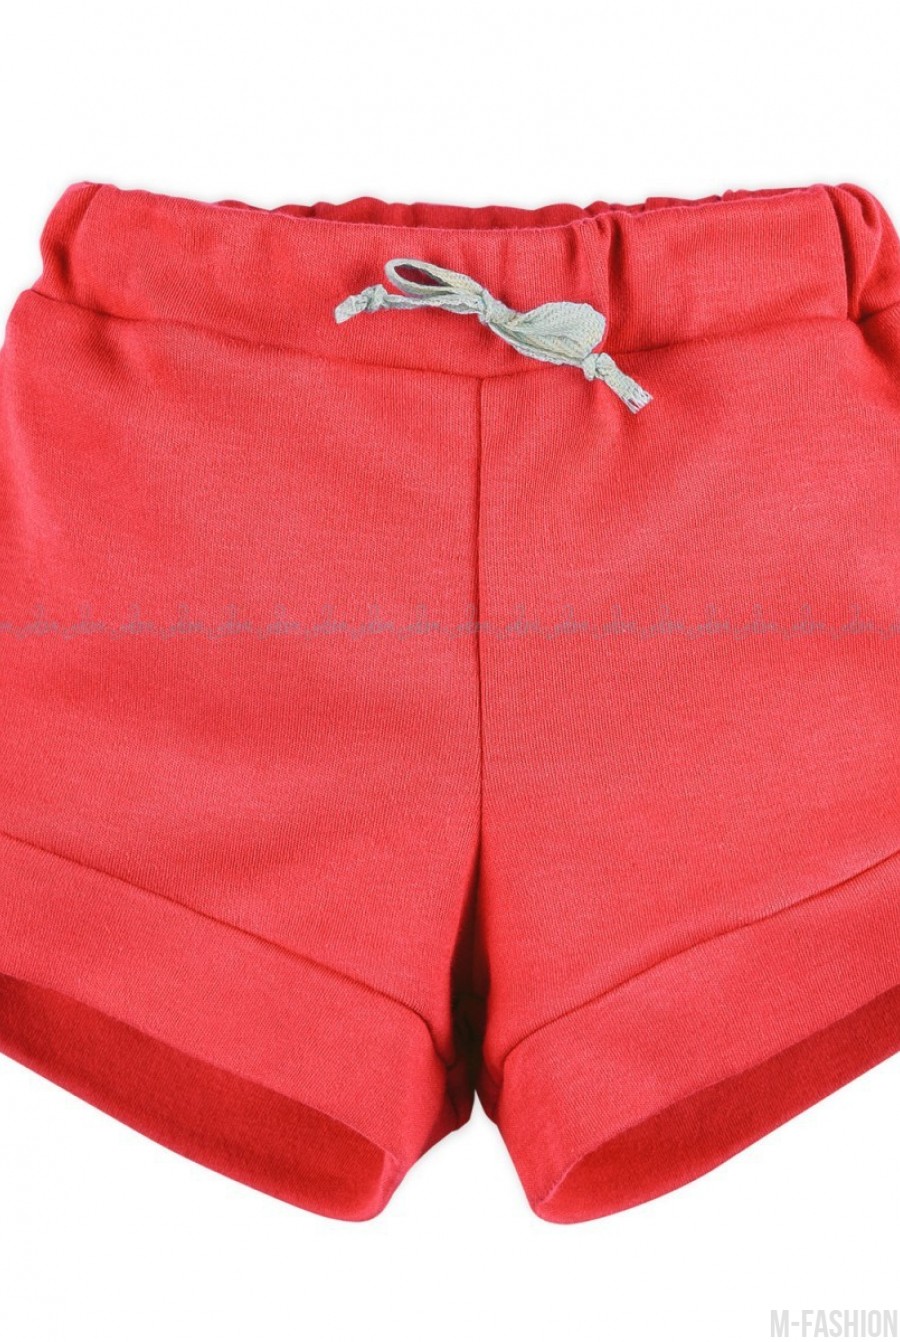 Трикотажные красные шорты с бантом на поясе и подворотами - Фото 1